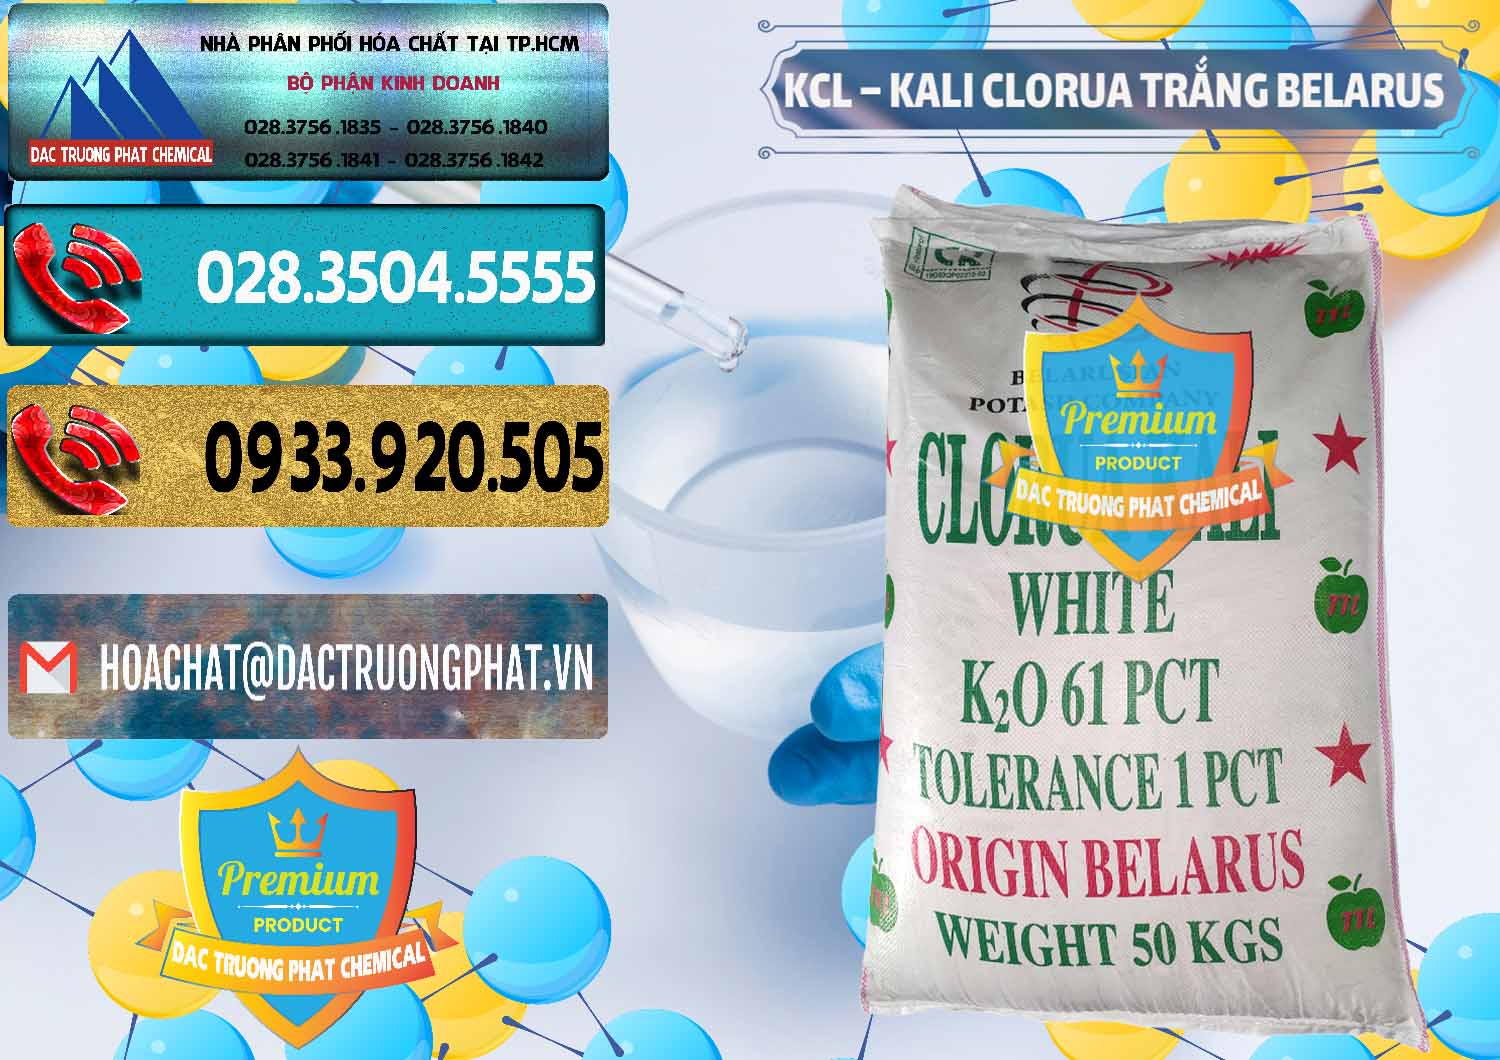 Cung cấp & bán KCL – Kali Clorua Trắng Belarus - 0085 - Cty chuyên cung cấp và bán hóa chất tại TP.HCM - hoachatdetnhuom.com